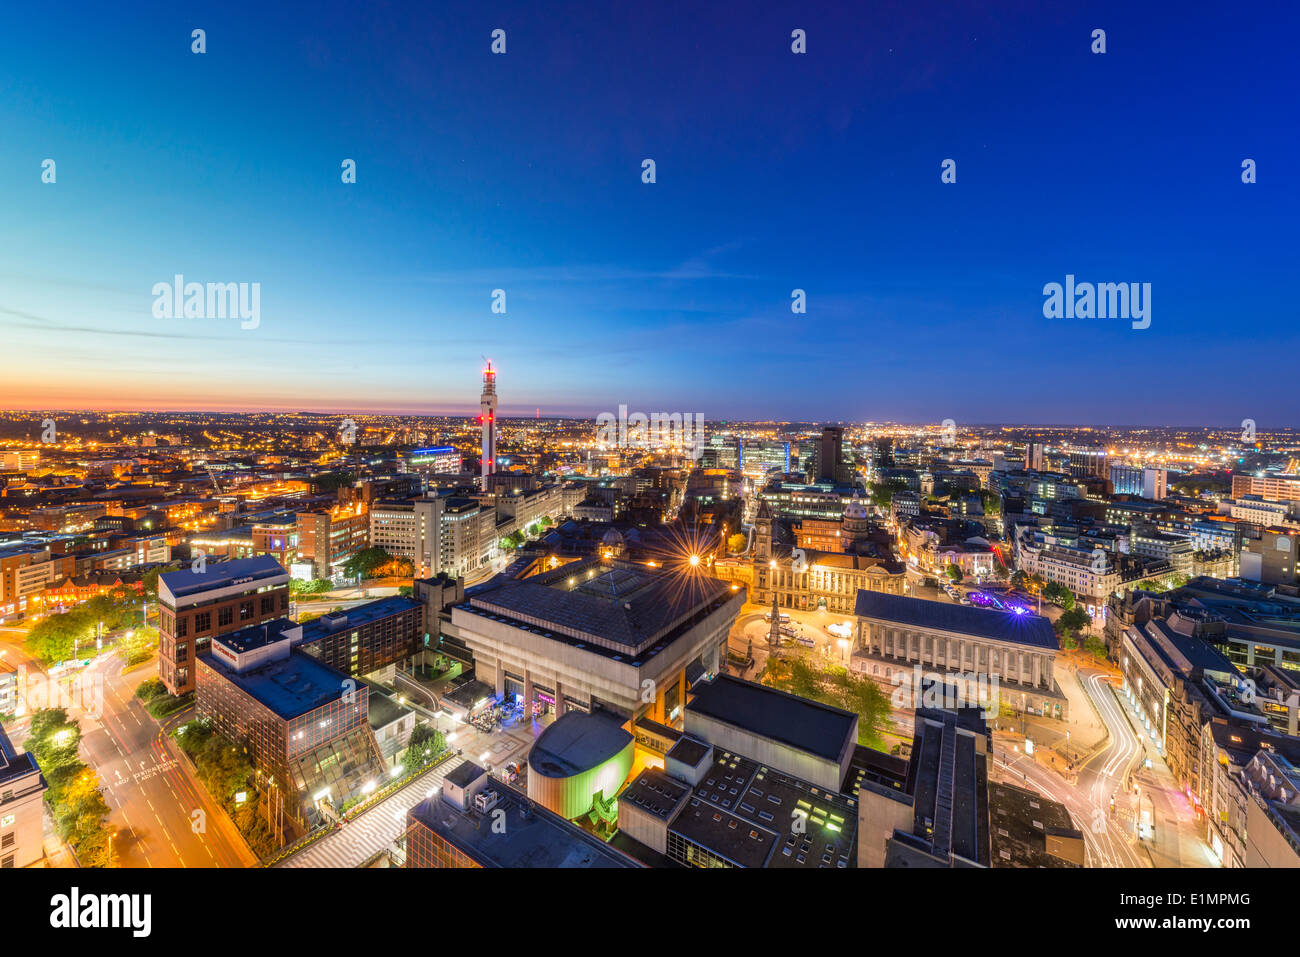 Eine Nacht-Blick auf das Stadtzentrum von Birmingham in der Nacht. Stockfoto